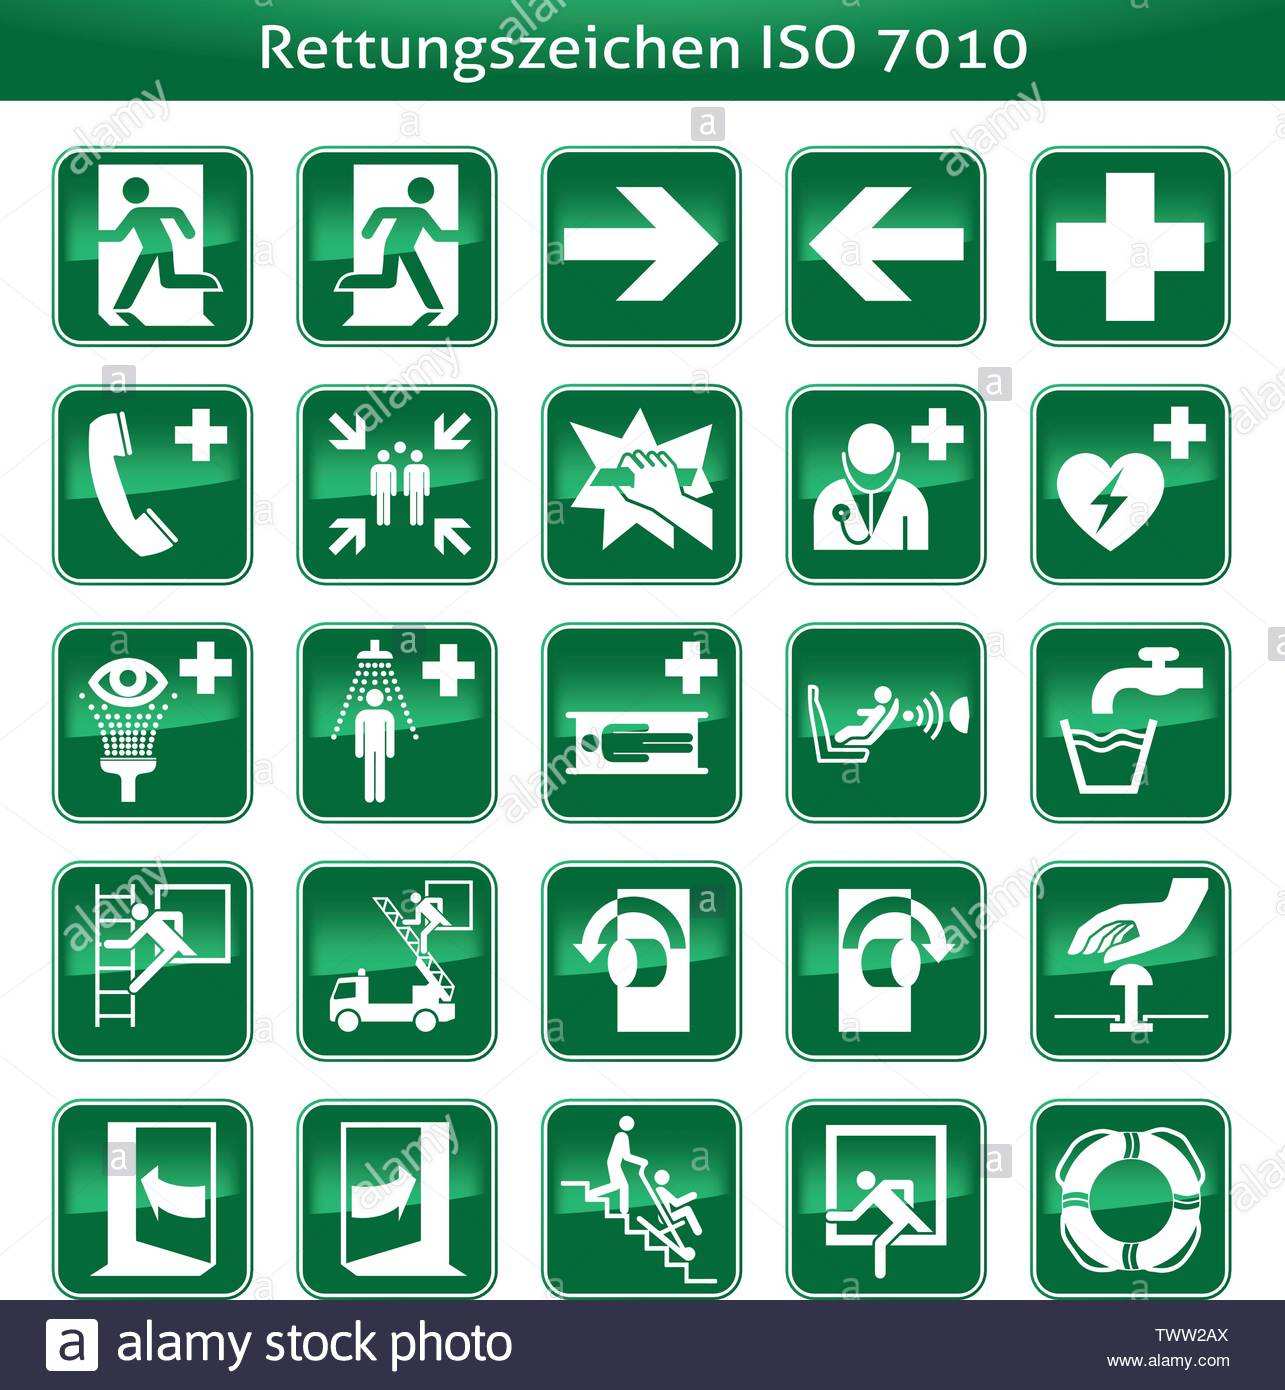 Rettung Erste Hilfe Sicherheit Zeichen Grun Notausgang Emergency Kreuz Stock Vektorgrafik Alamy